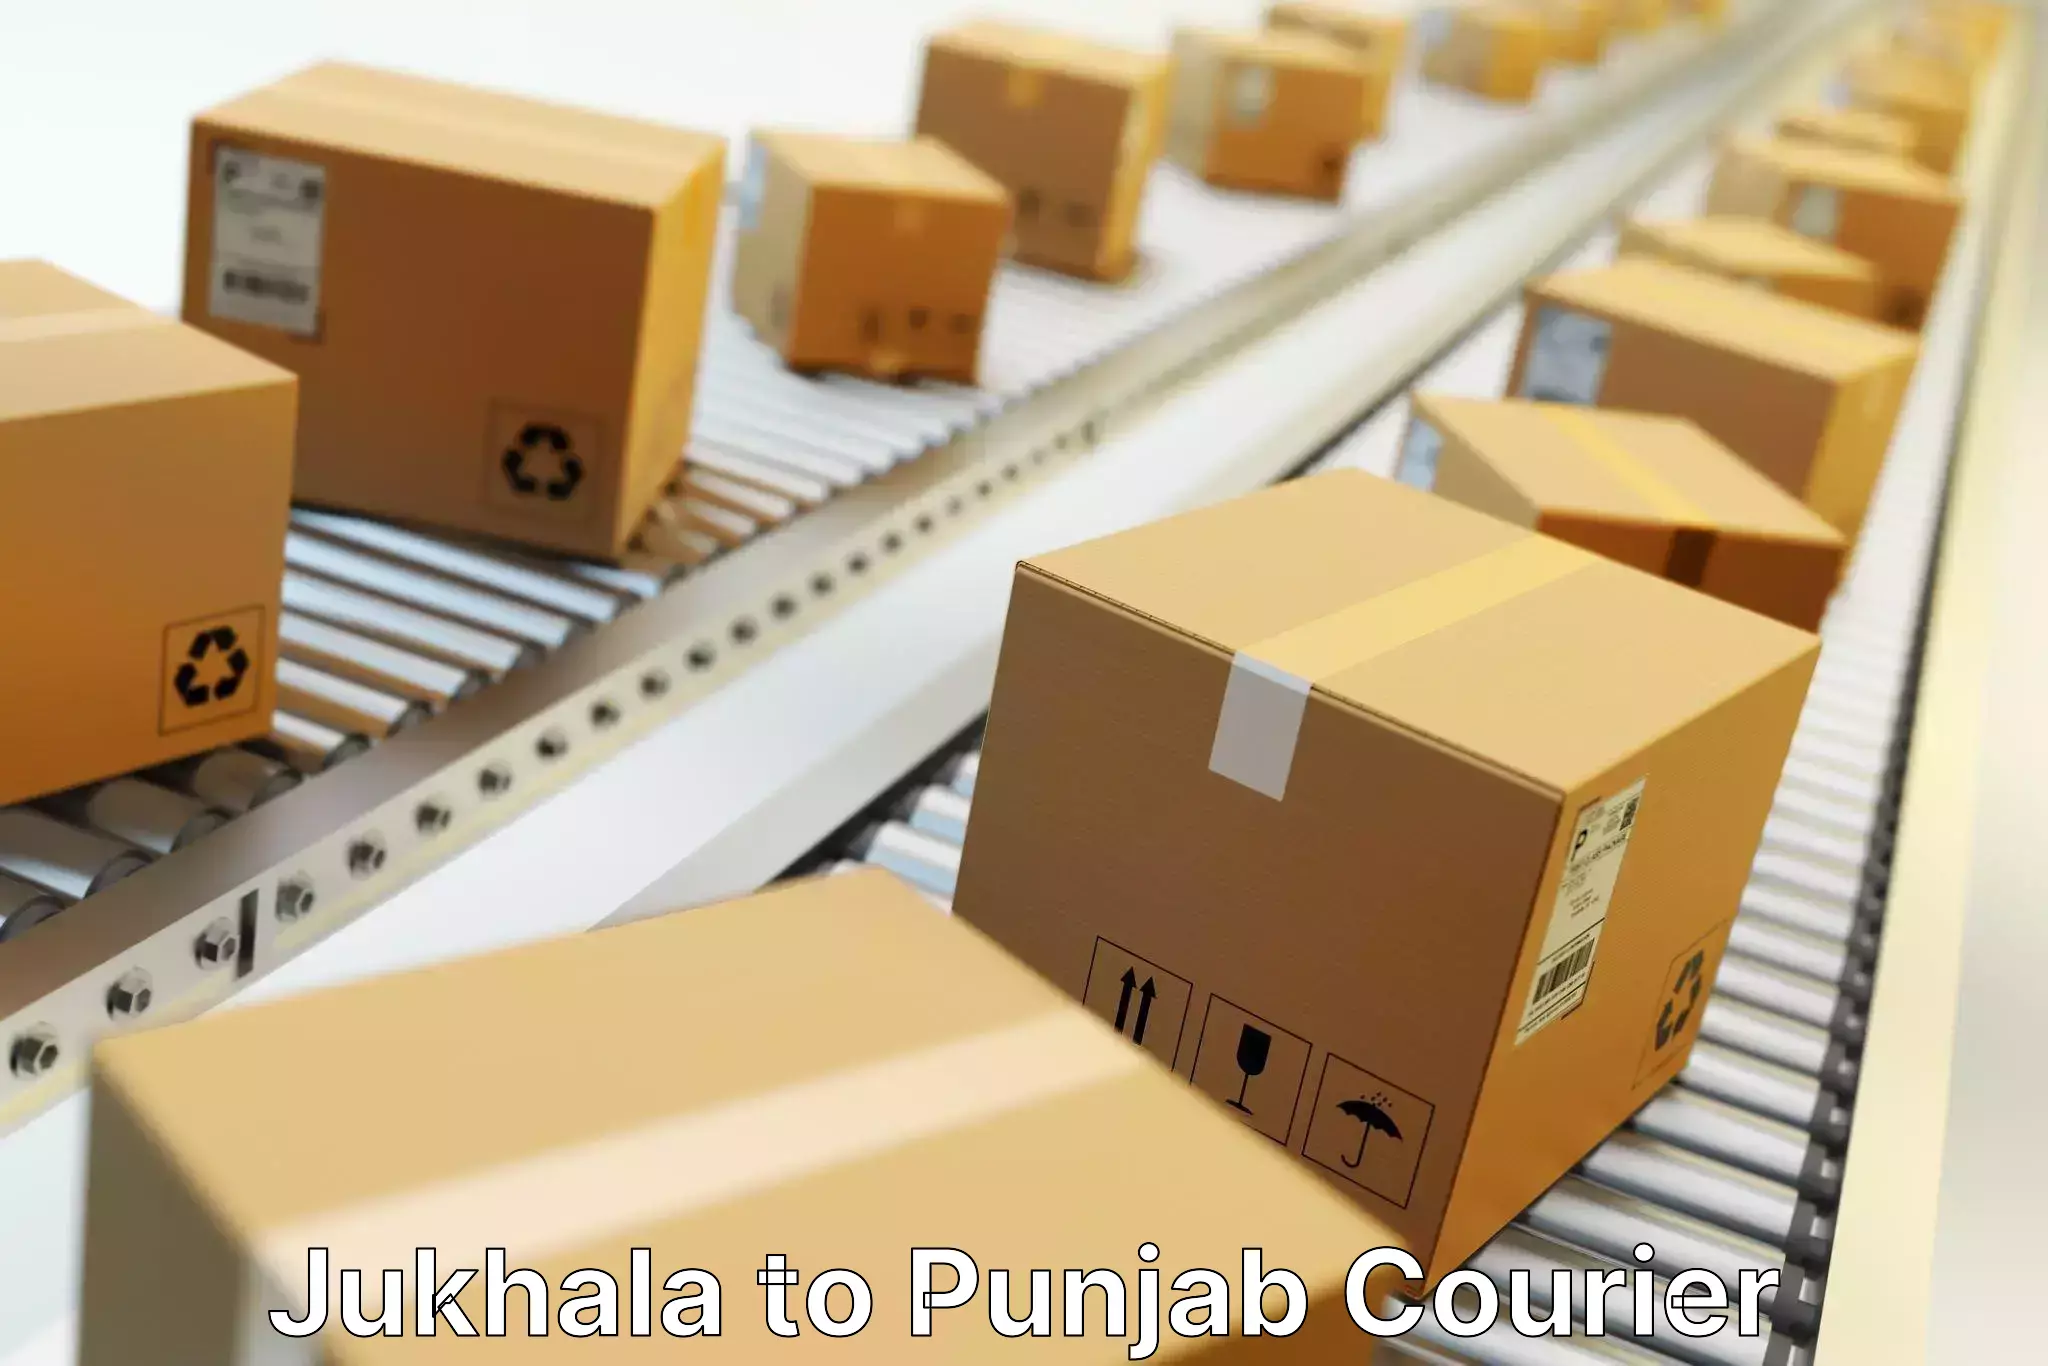 Global courier networks Jukhala to NIT Jallandhar